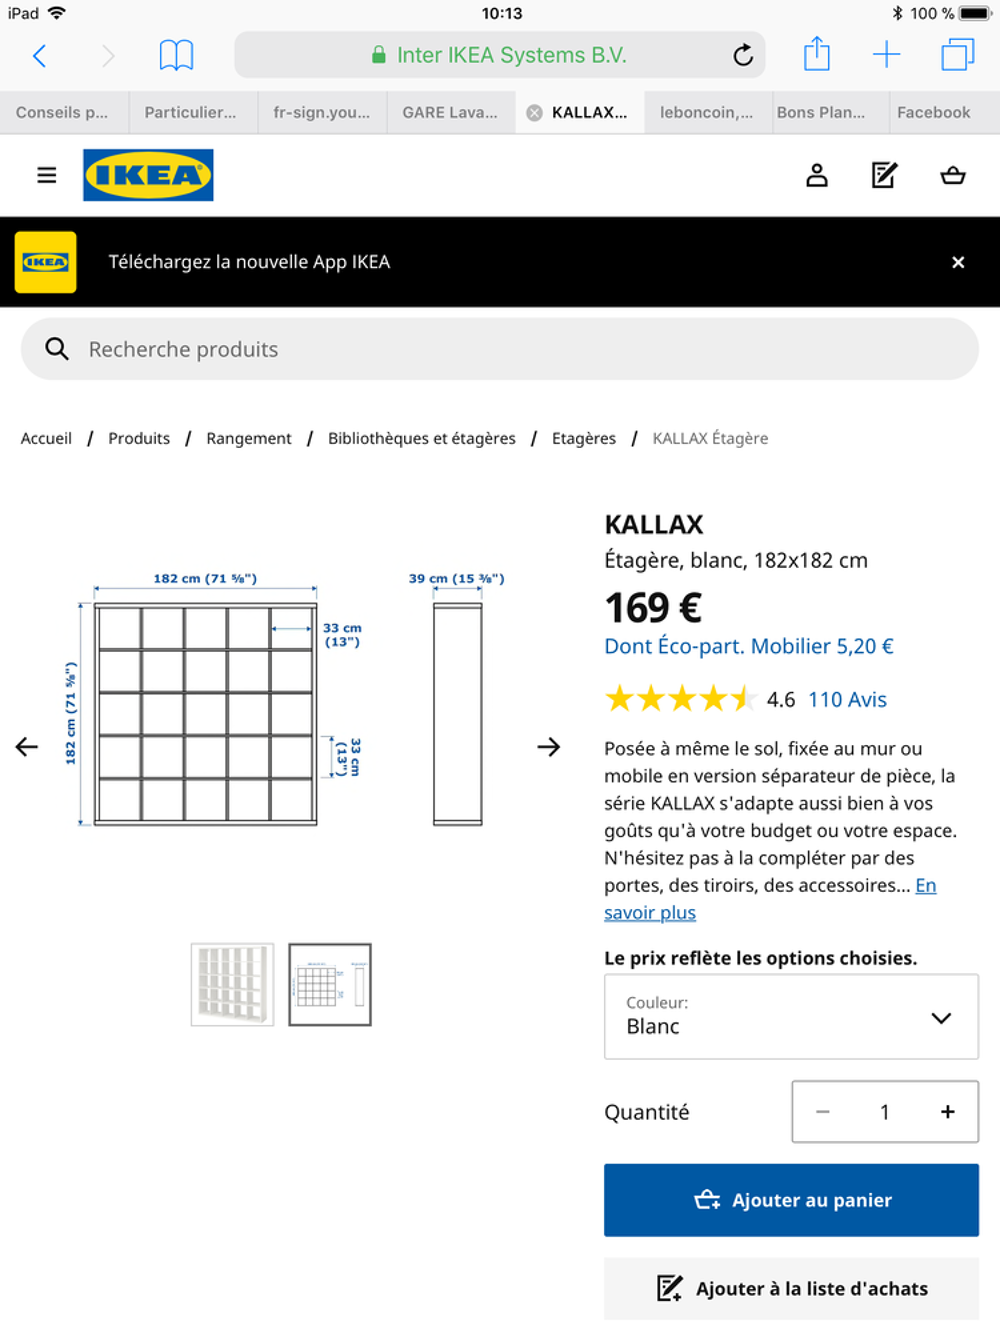 grande &eacute;tag&egrave;re blanche IKEA Kallax 1m82 par 1m82 Meubles